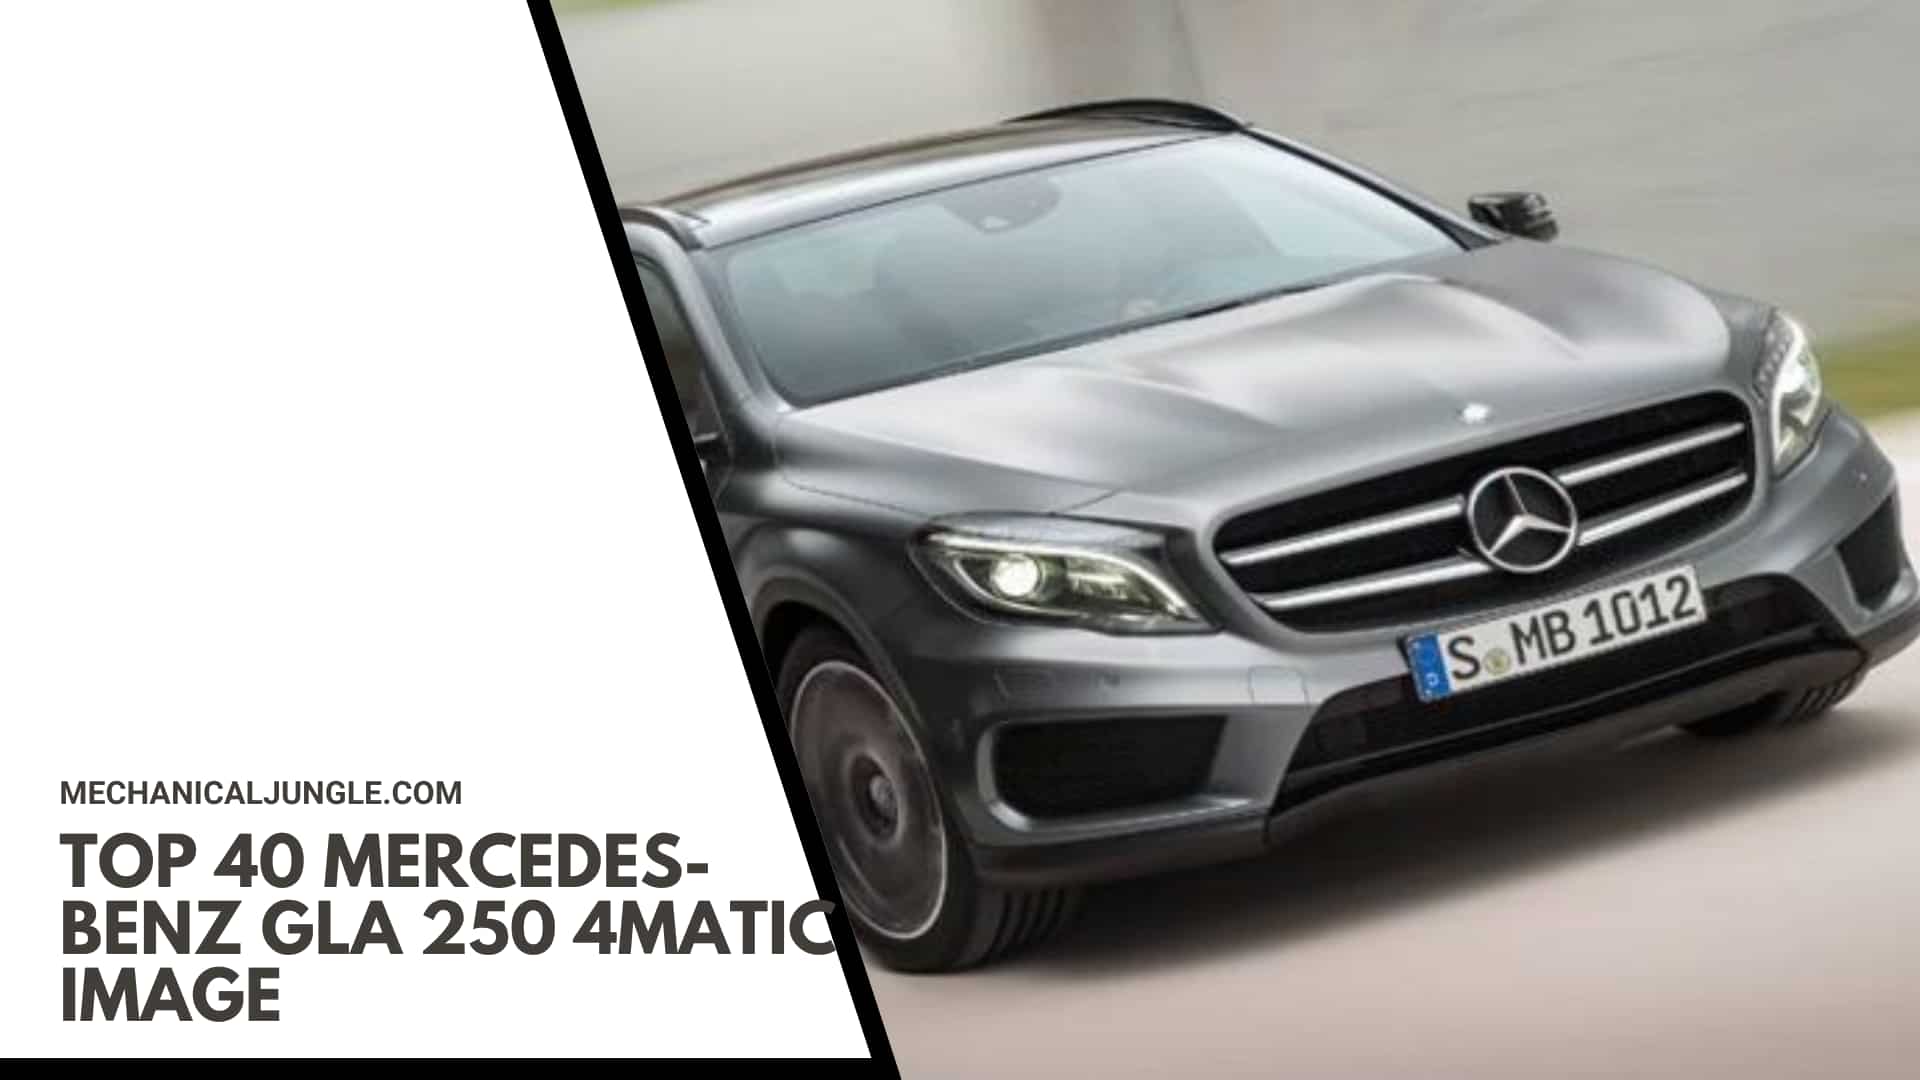 Top 40 Mercedes-Benz GLA 250 4MATIC Image